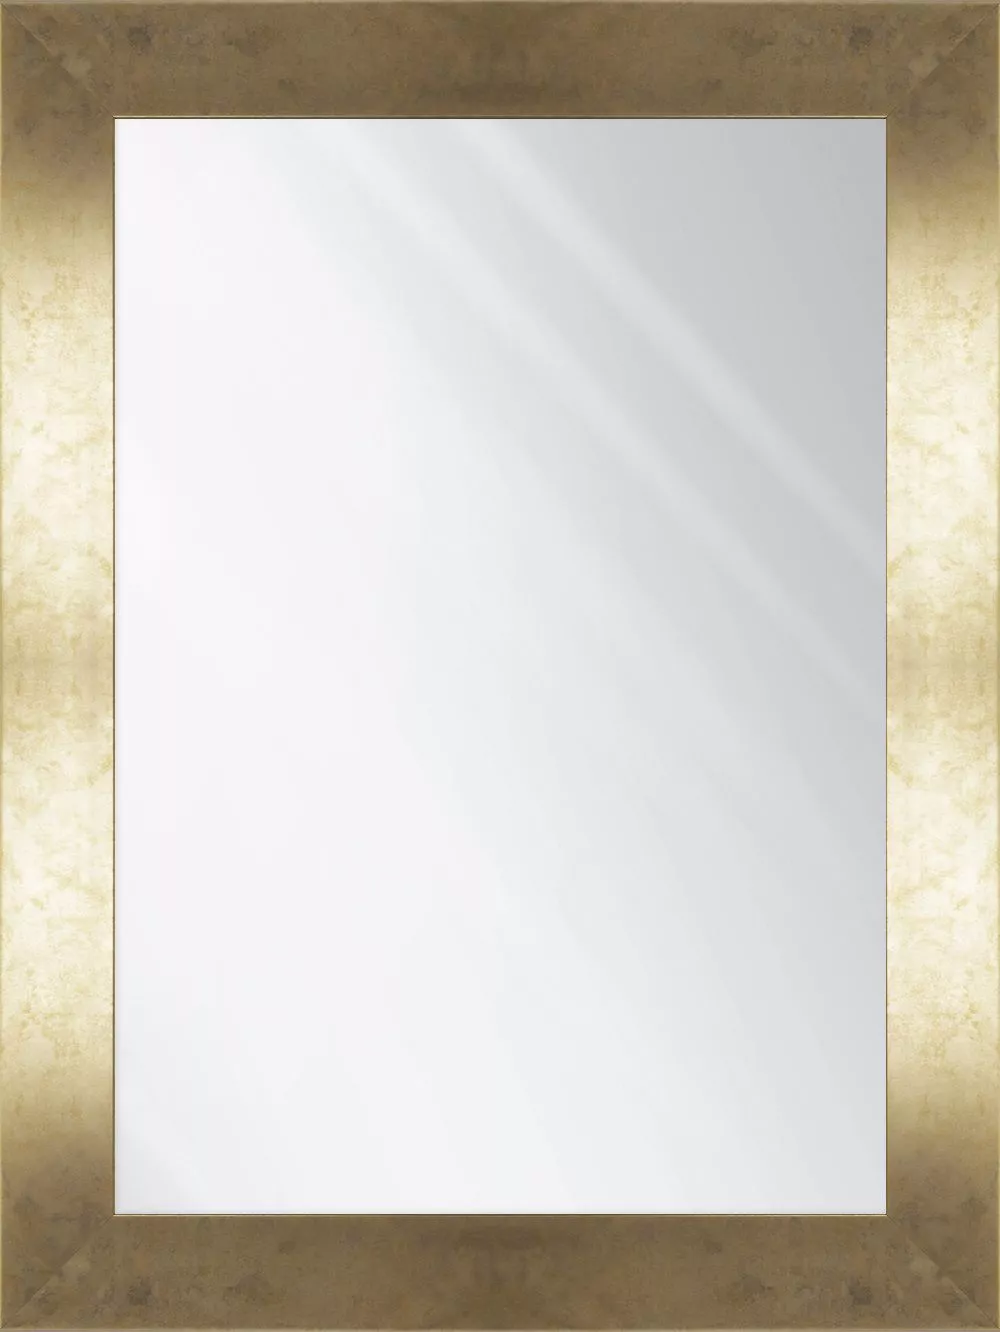 Specchio rettangolare da parete 50x70 cornice oro - 711A